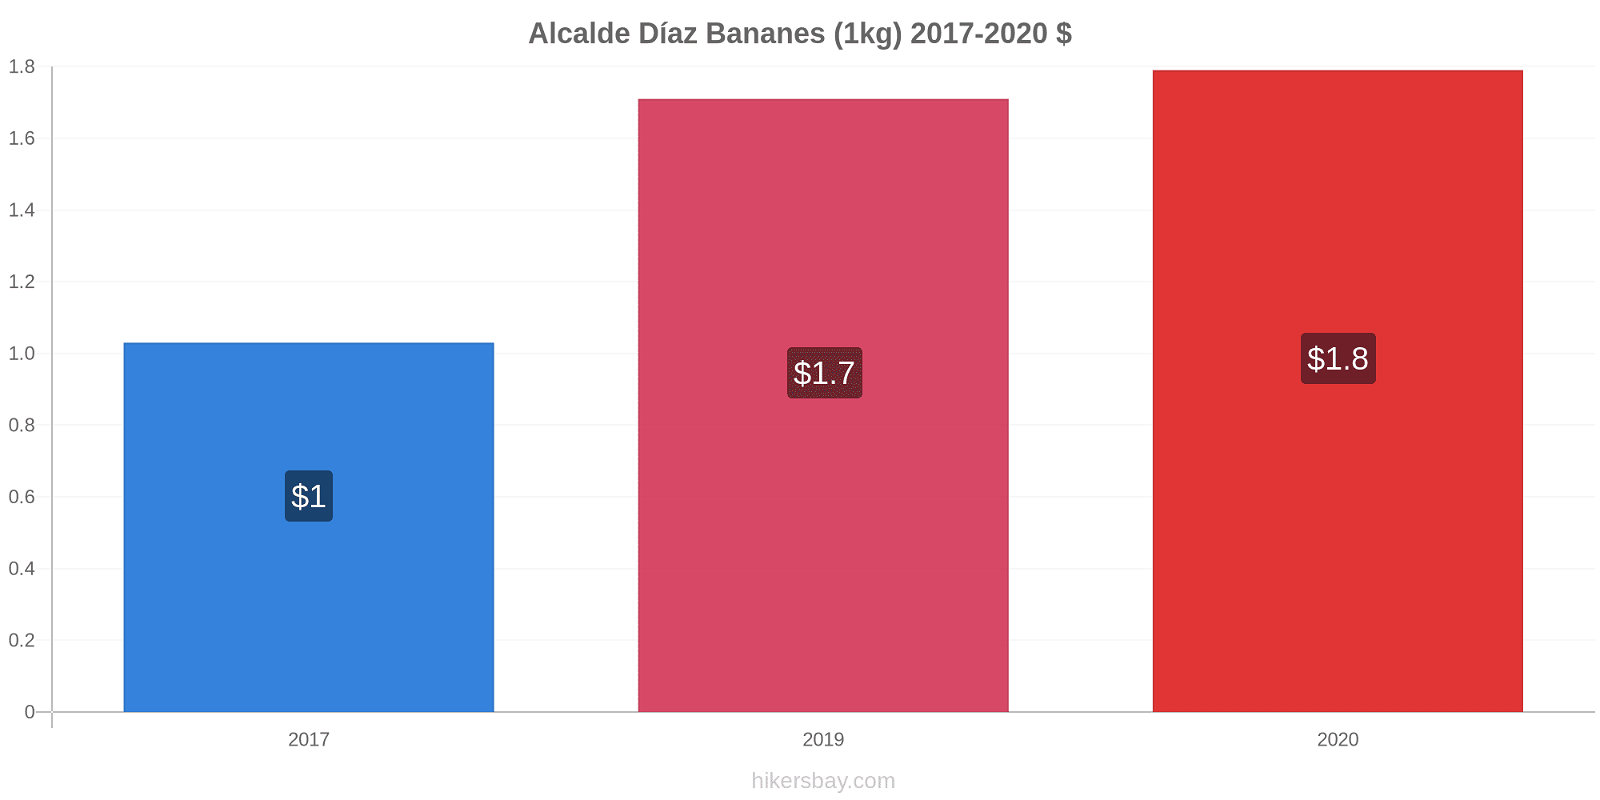 Alcalde Díaz changements de prix Bananes (1kg) hikersbay.com